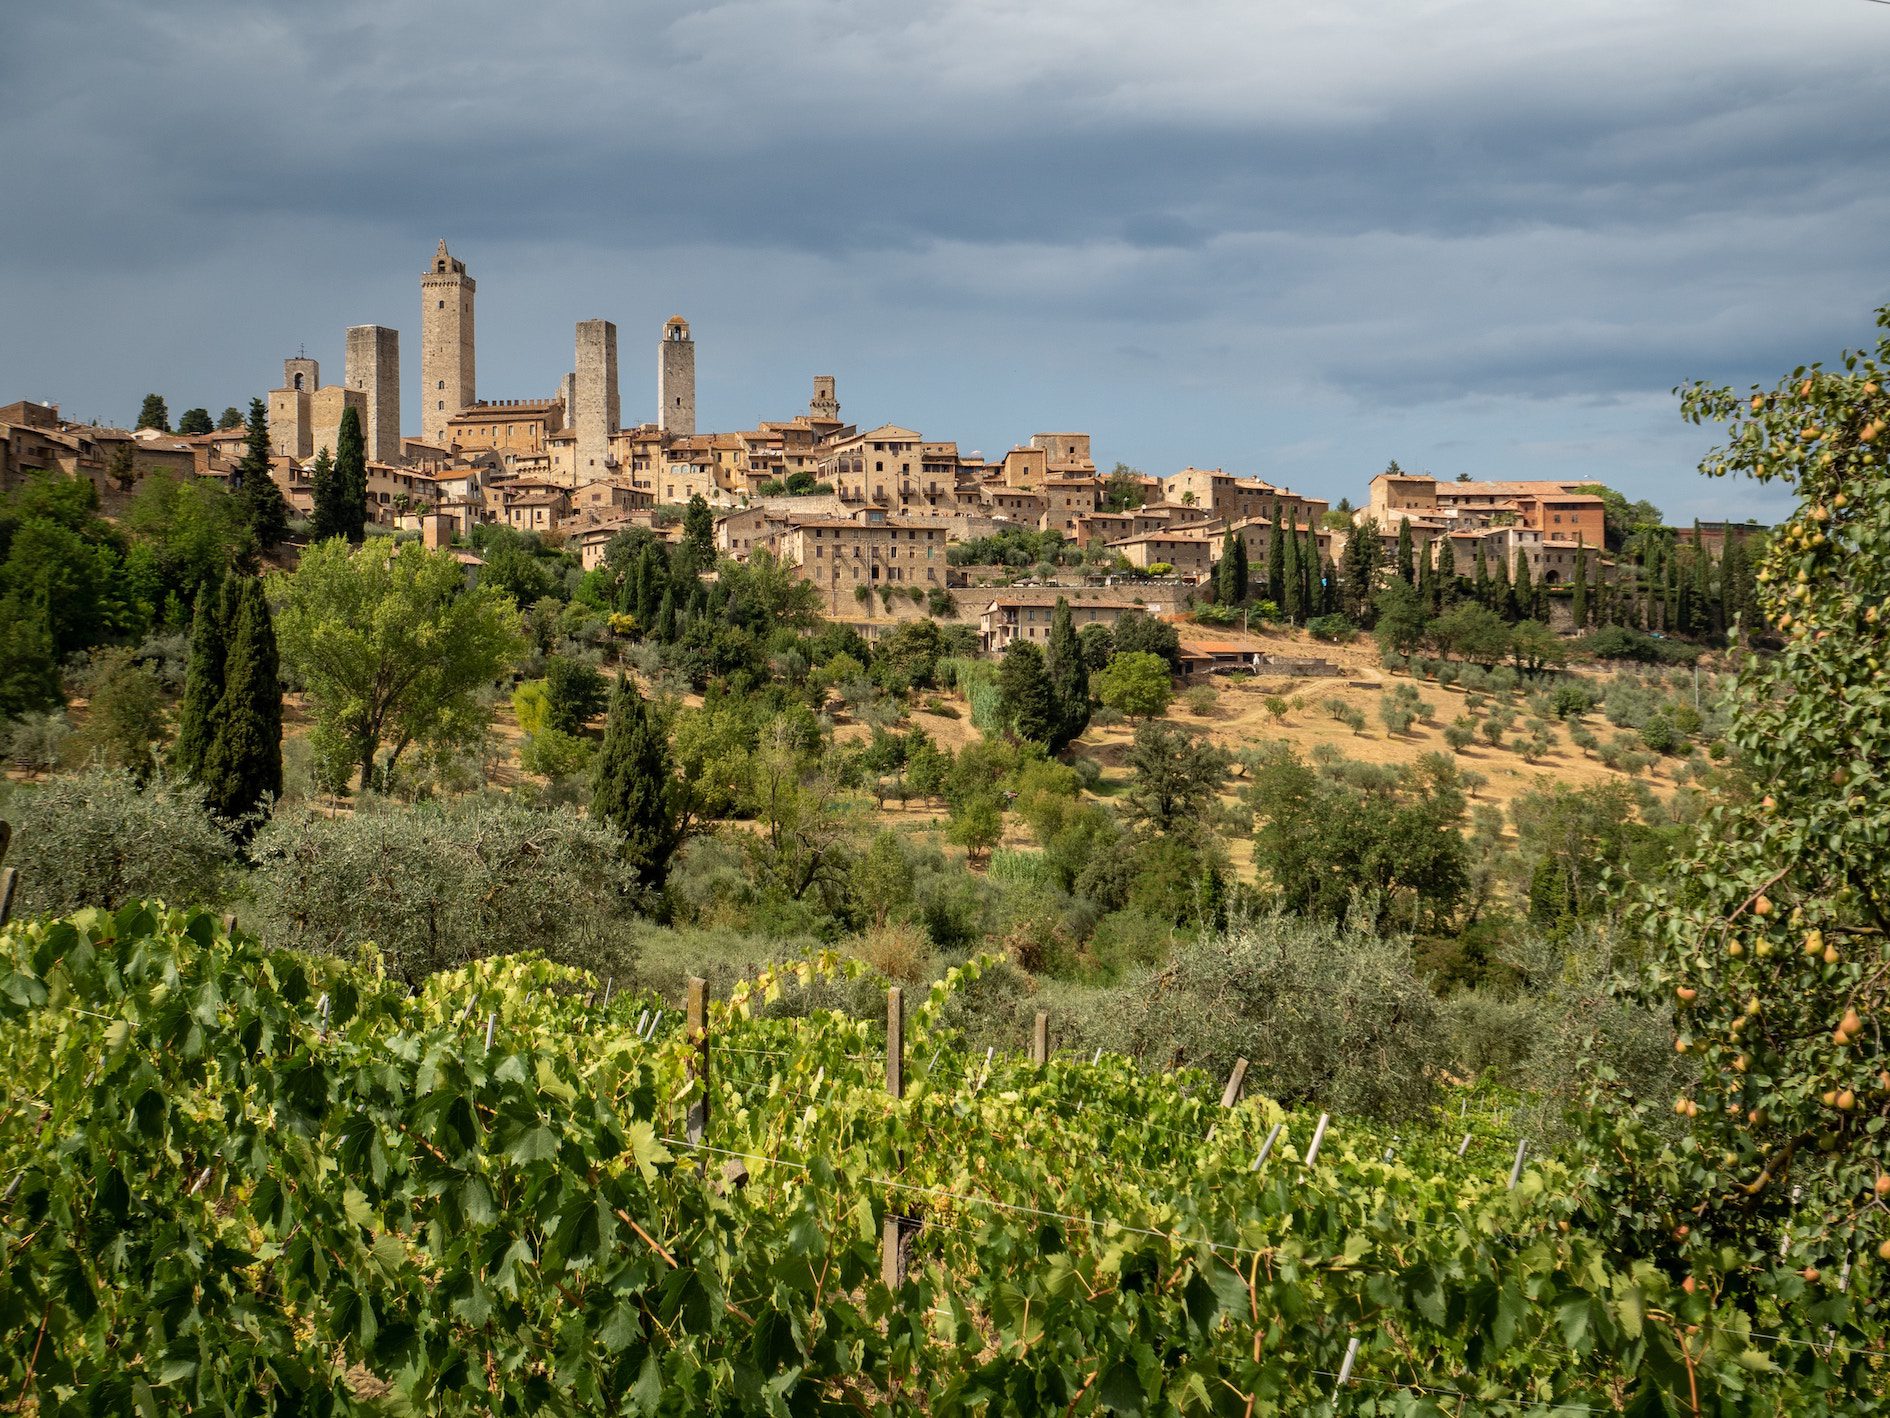 Turismo enogastronomico:+ 37% dal 2016. E la cucina italiana è candidata a Patrimonio UNESCO